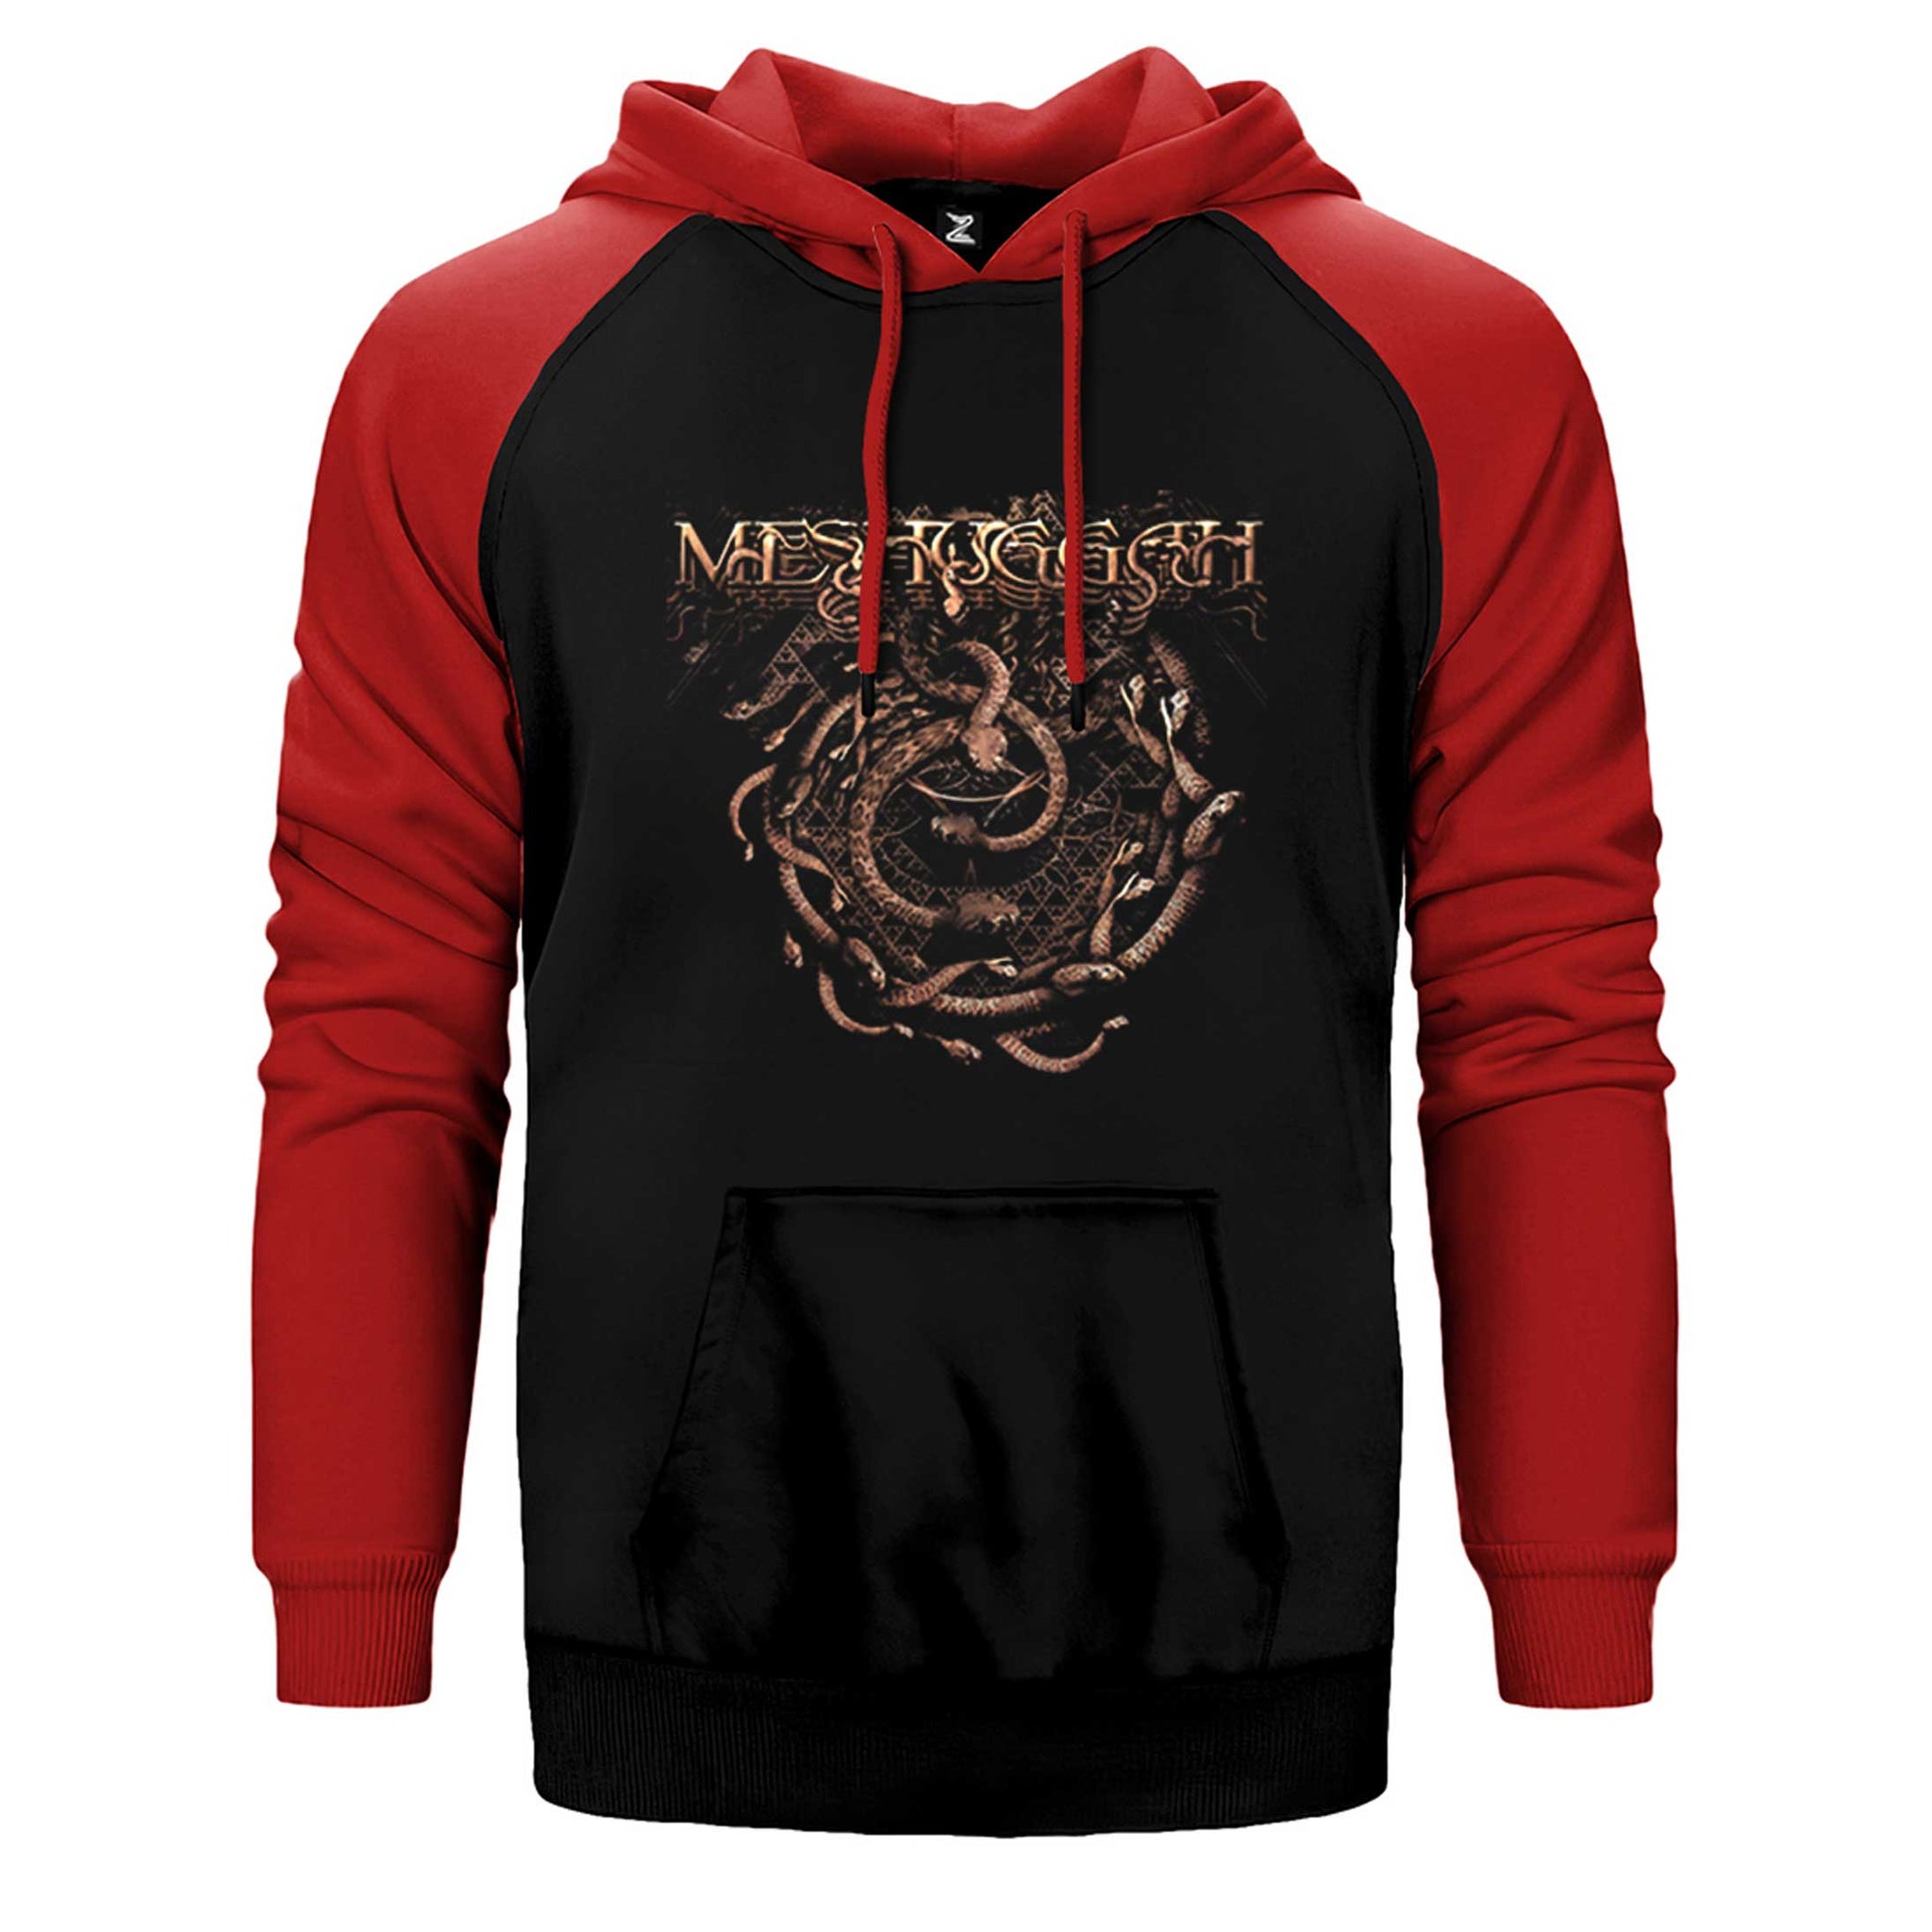 Meshuggah The Ophidian Trek Çift Renk Reglan Kol Sweatshirt / Hoodie